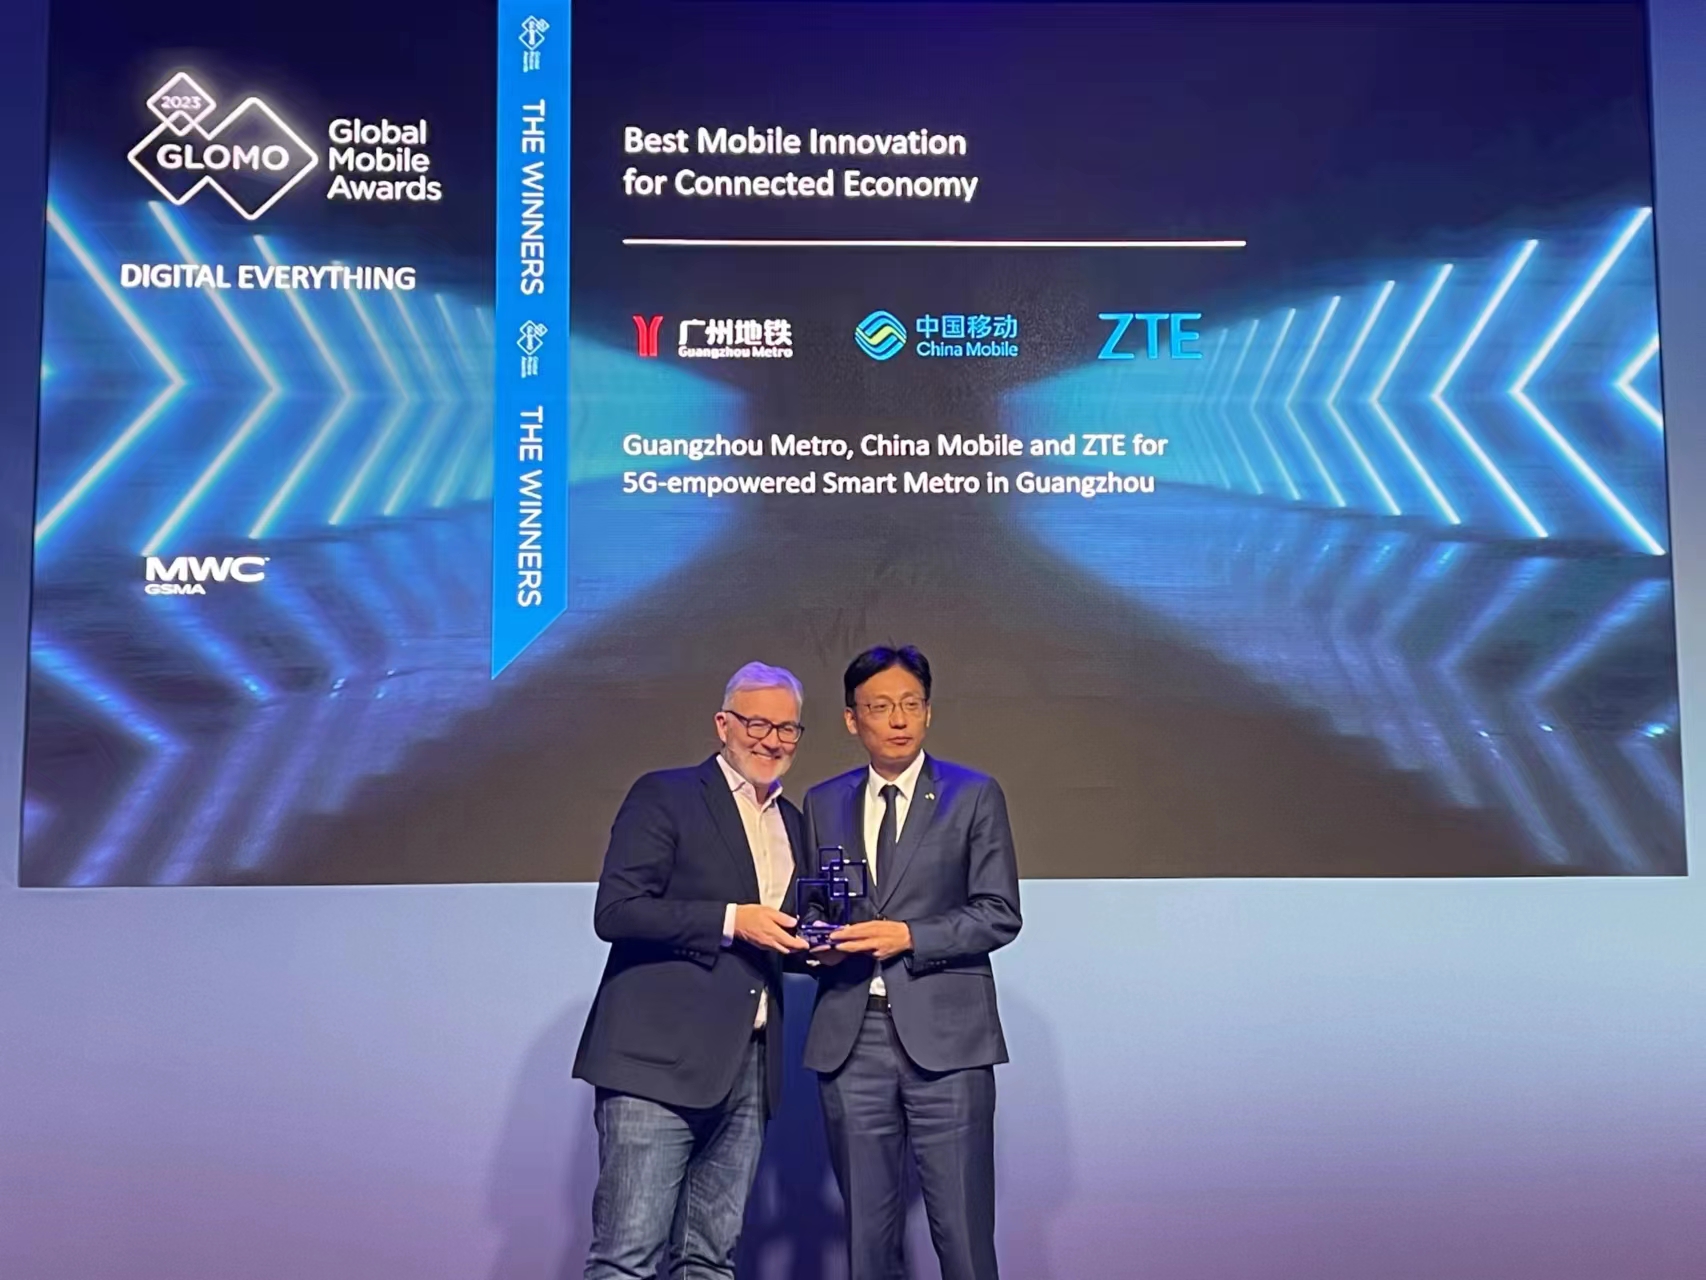 广州地铁、广州移动和中兴通讯荣获GSMA GLOMO“最佳移动互联经济创新奖”